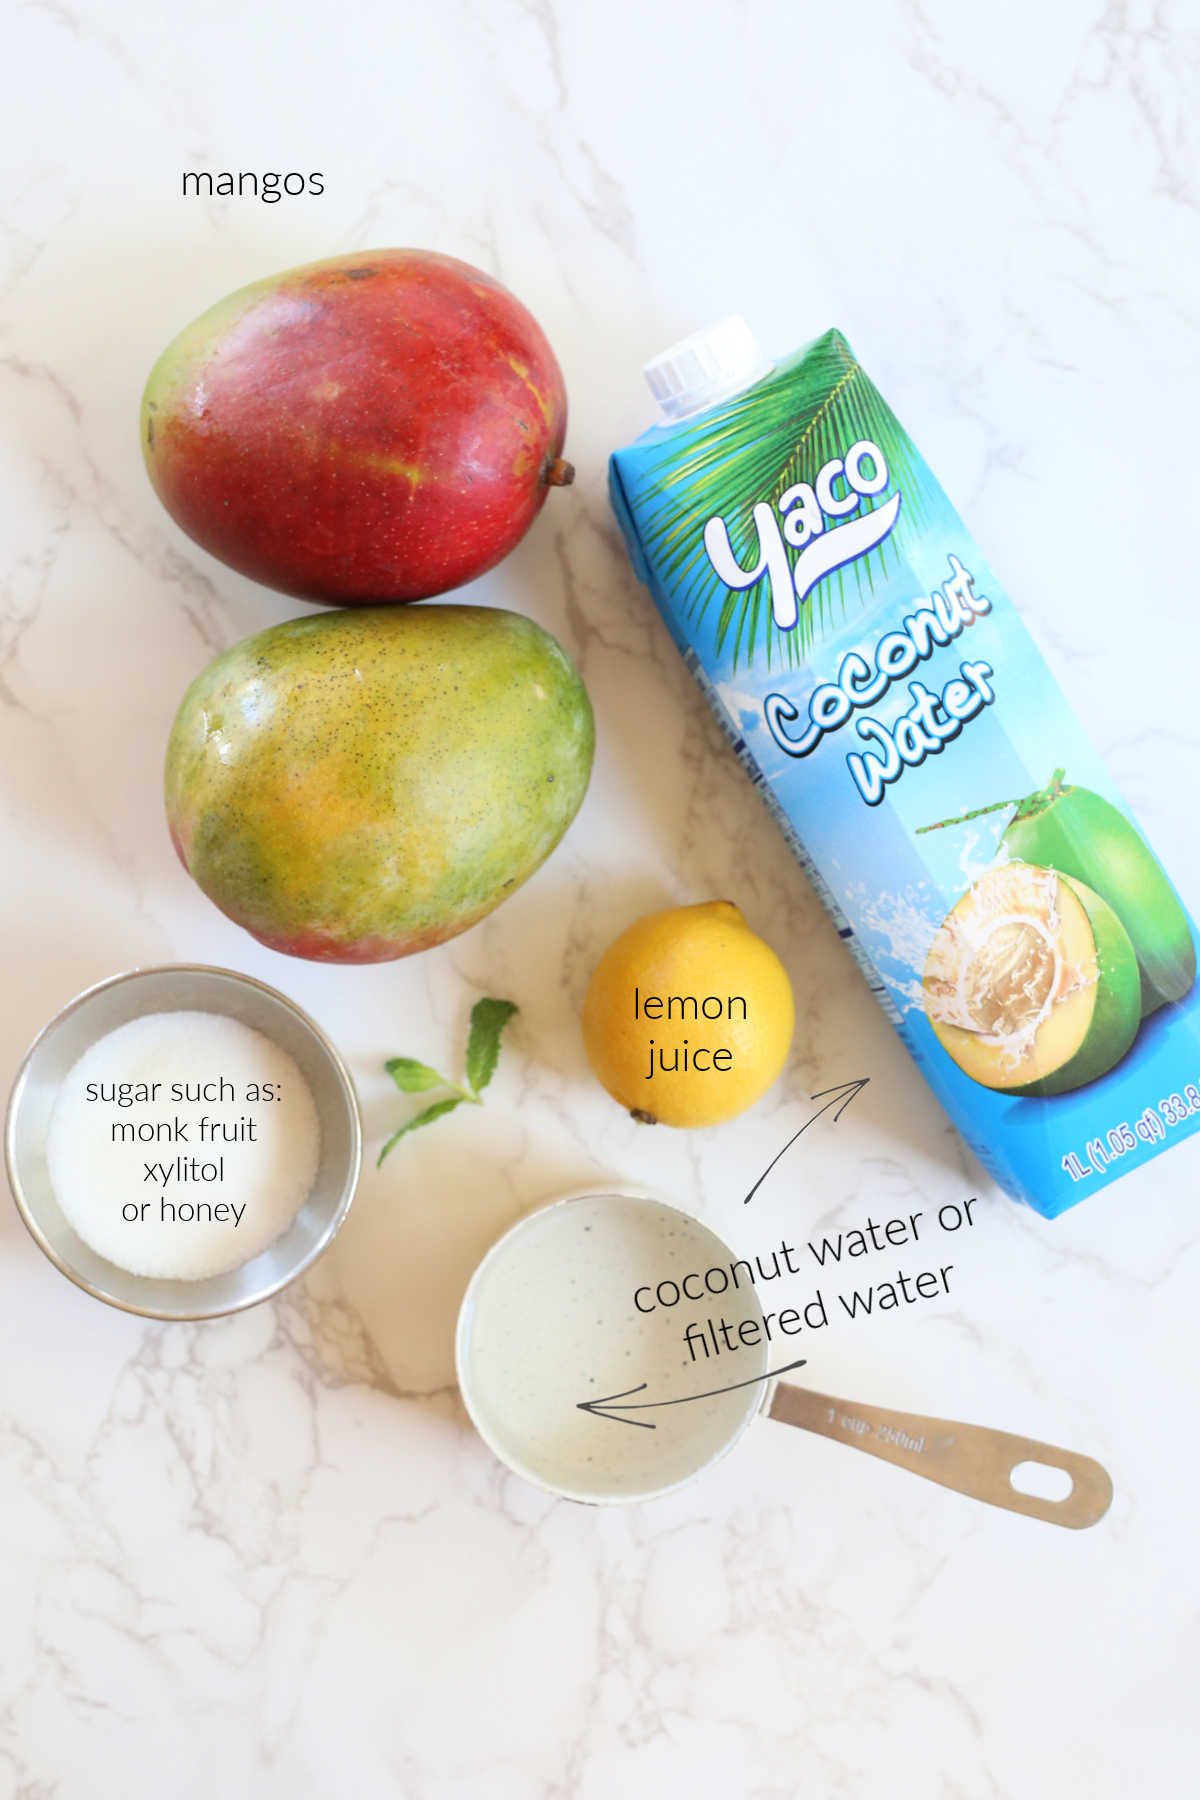 mangos lemon water sugar coconut water ingredients to make mango nectar juice